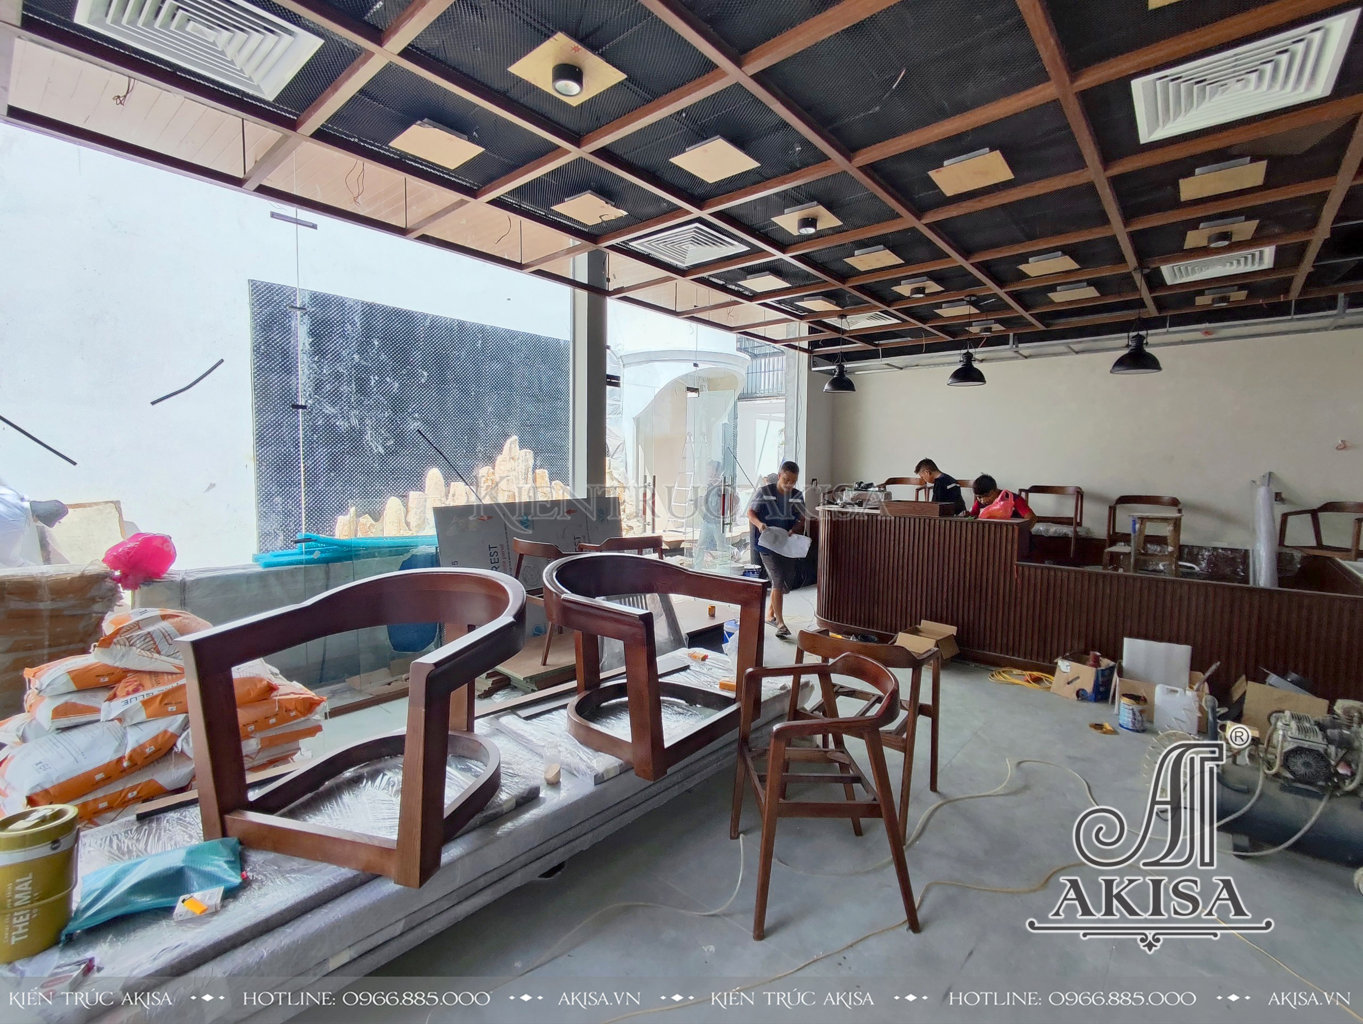 hình ảnh thi công nội thất quán café sân vườn hiện đại 1 tầng tại TP Hồ Chí Minh